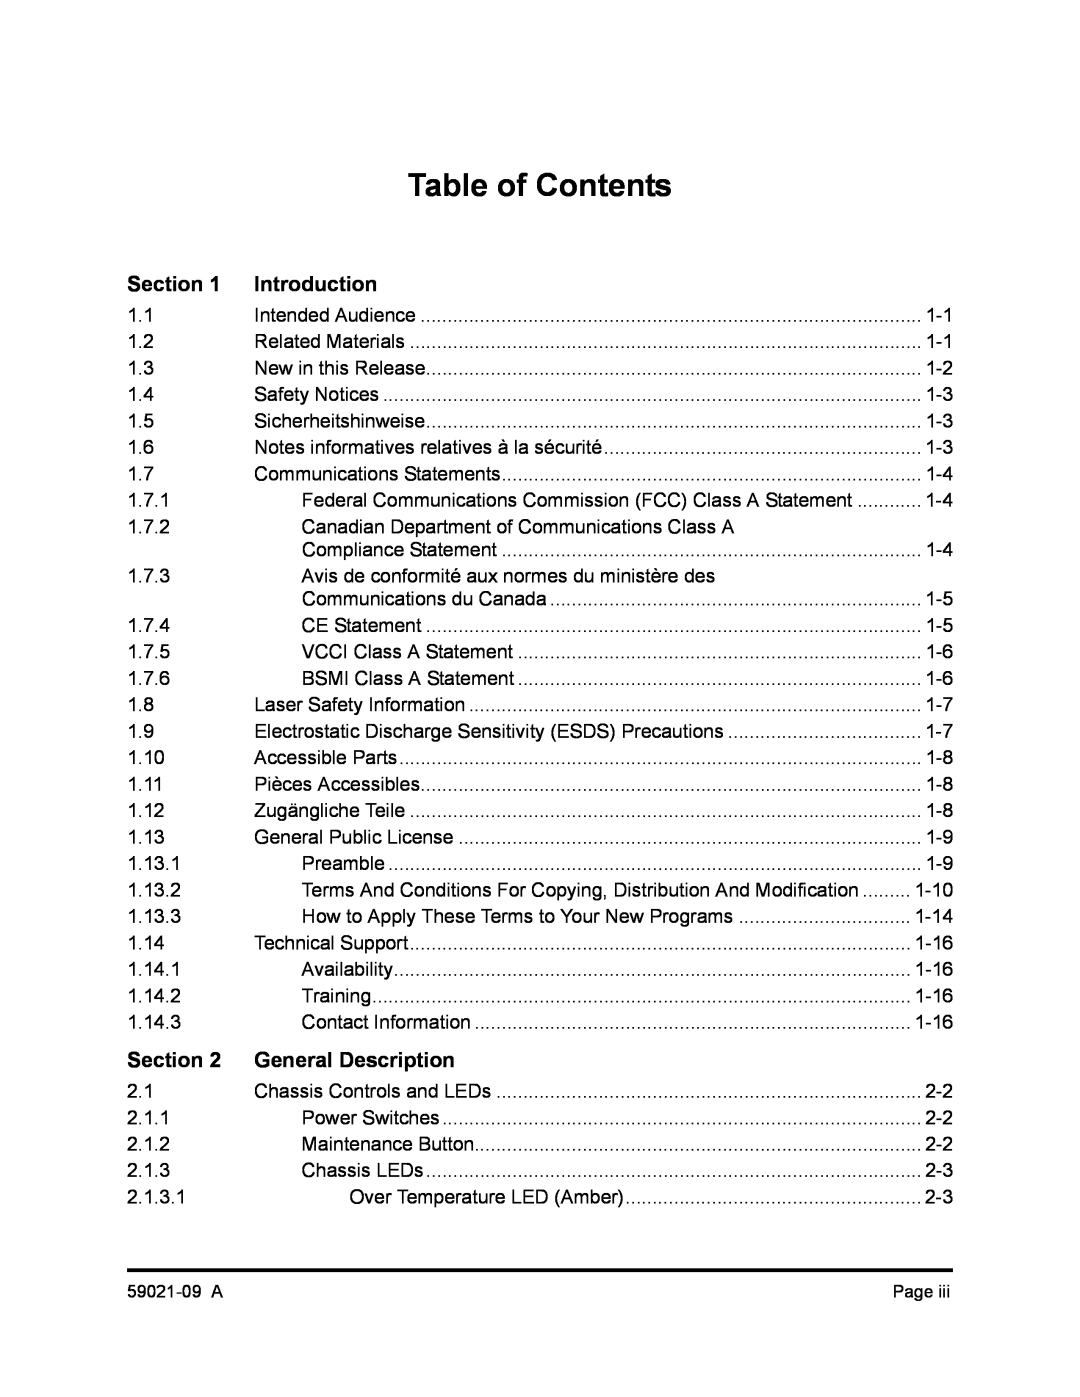 Q-Logic SB2A-16B, QLA2342 manual Section, Introduction, General Description, Table of Contents 